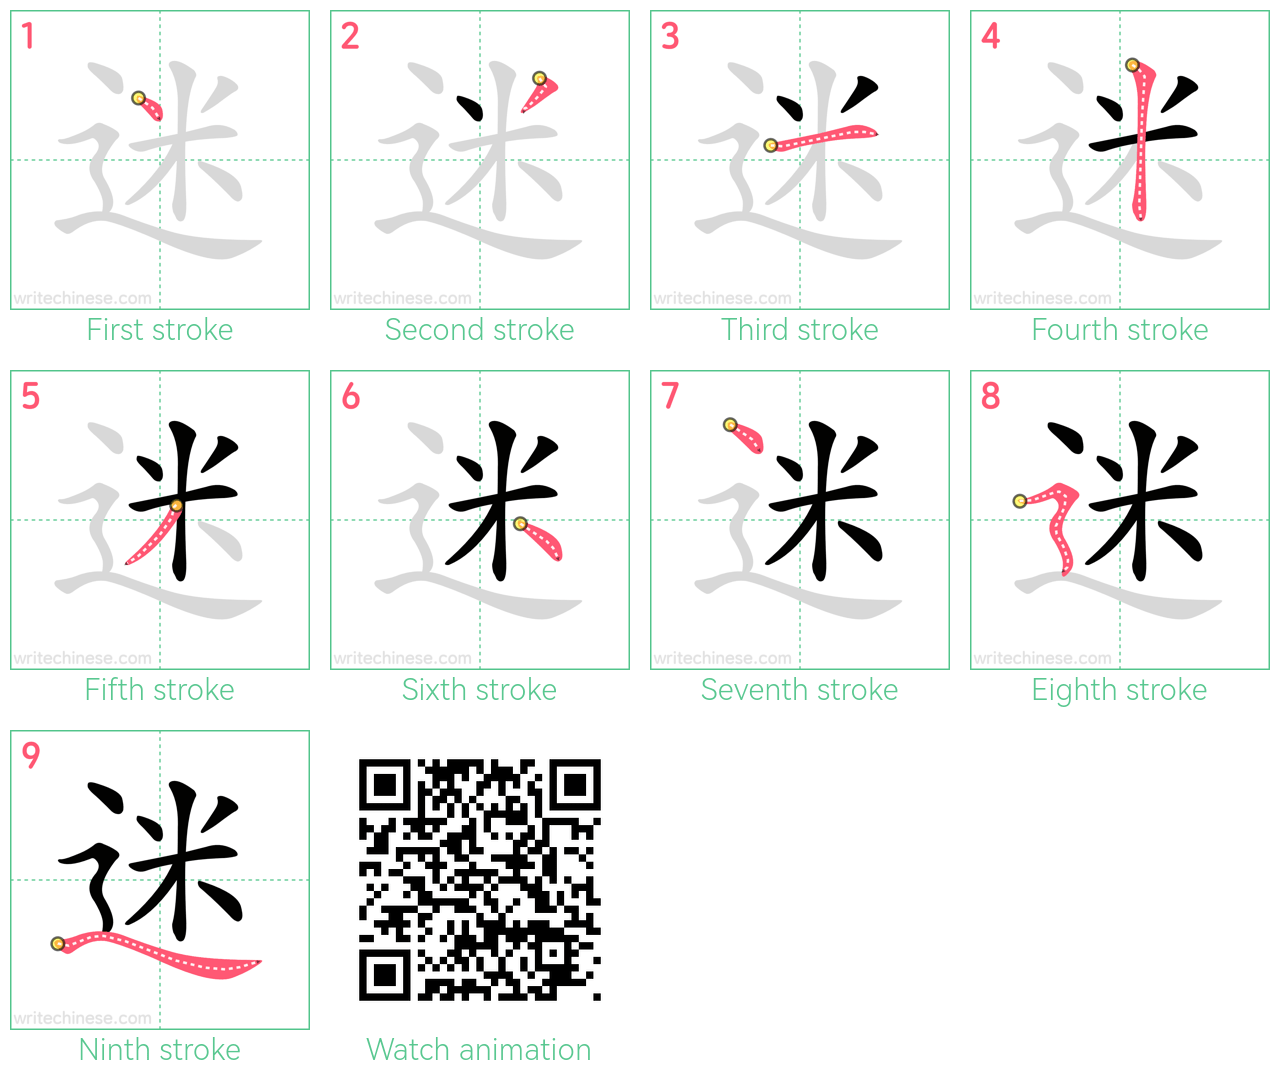 迷 step-by-step stroke order diagrams